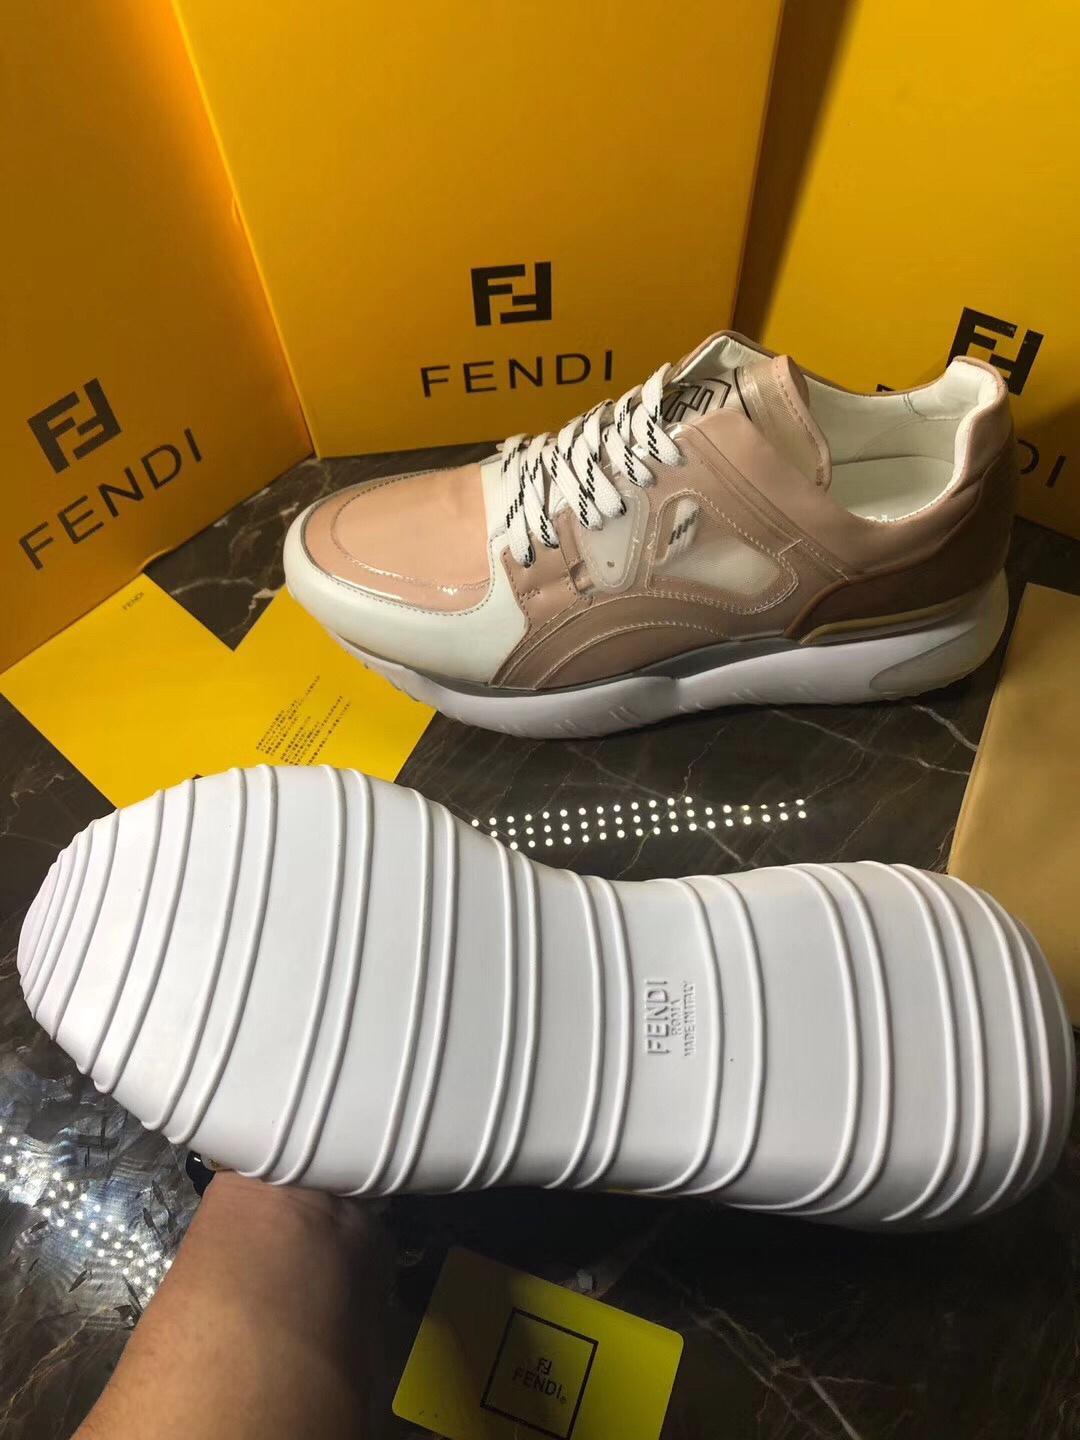 Fen Sneakers 3 Colors